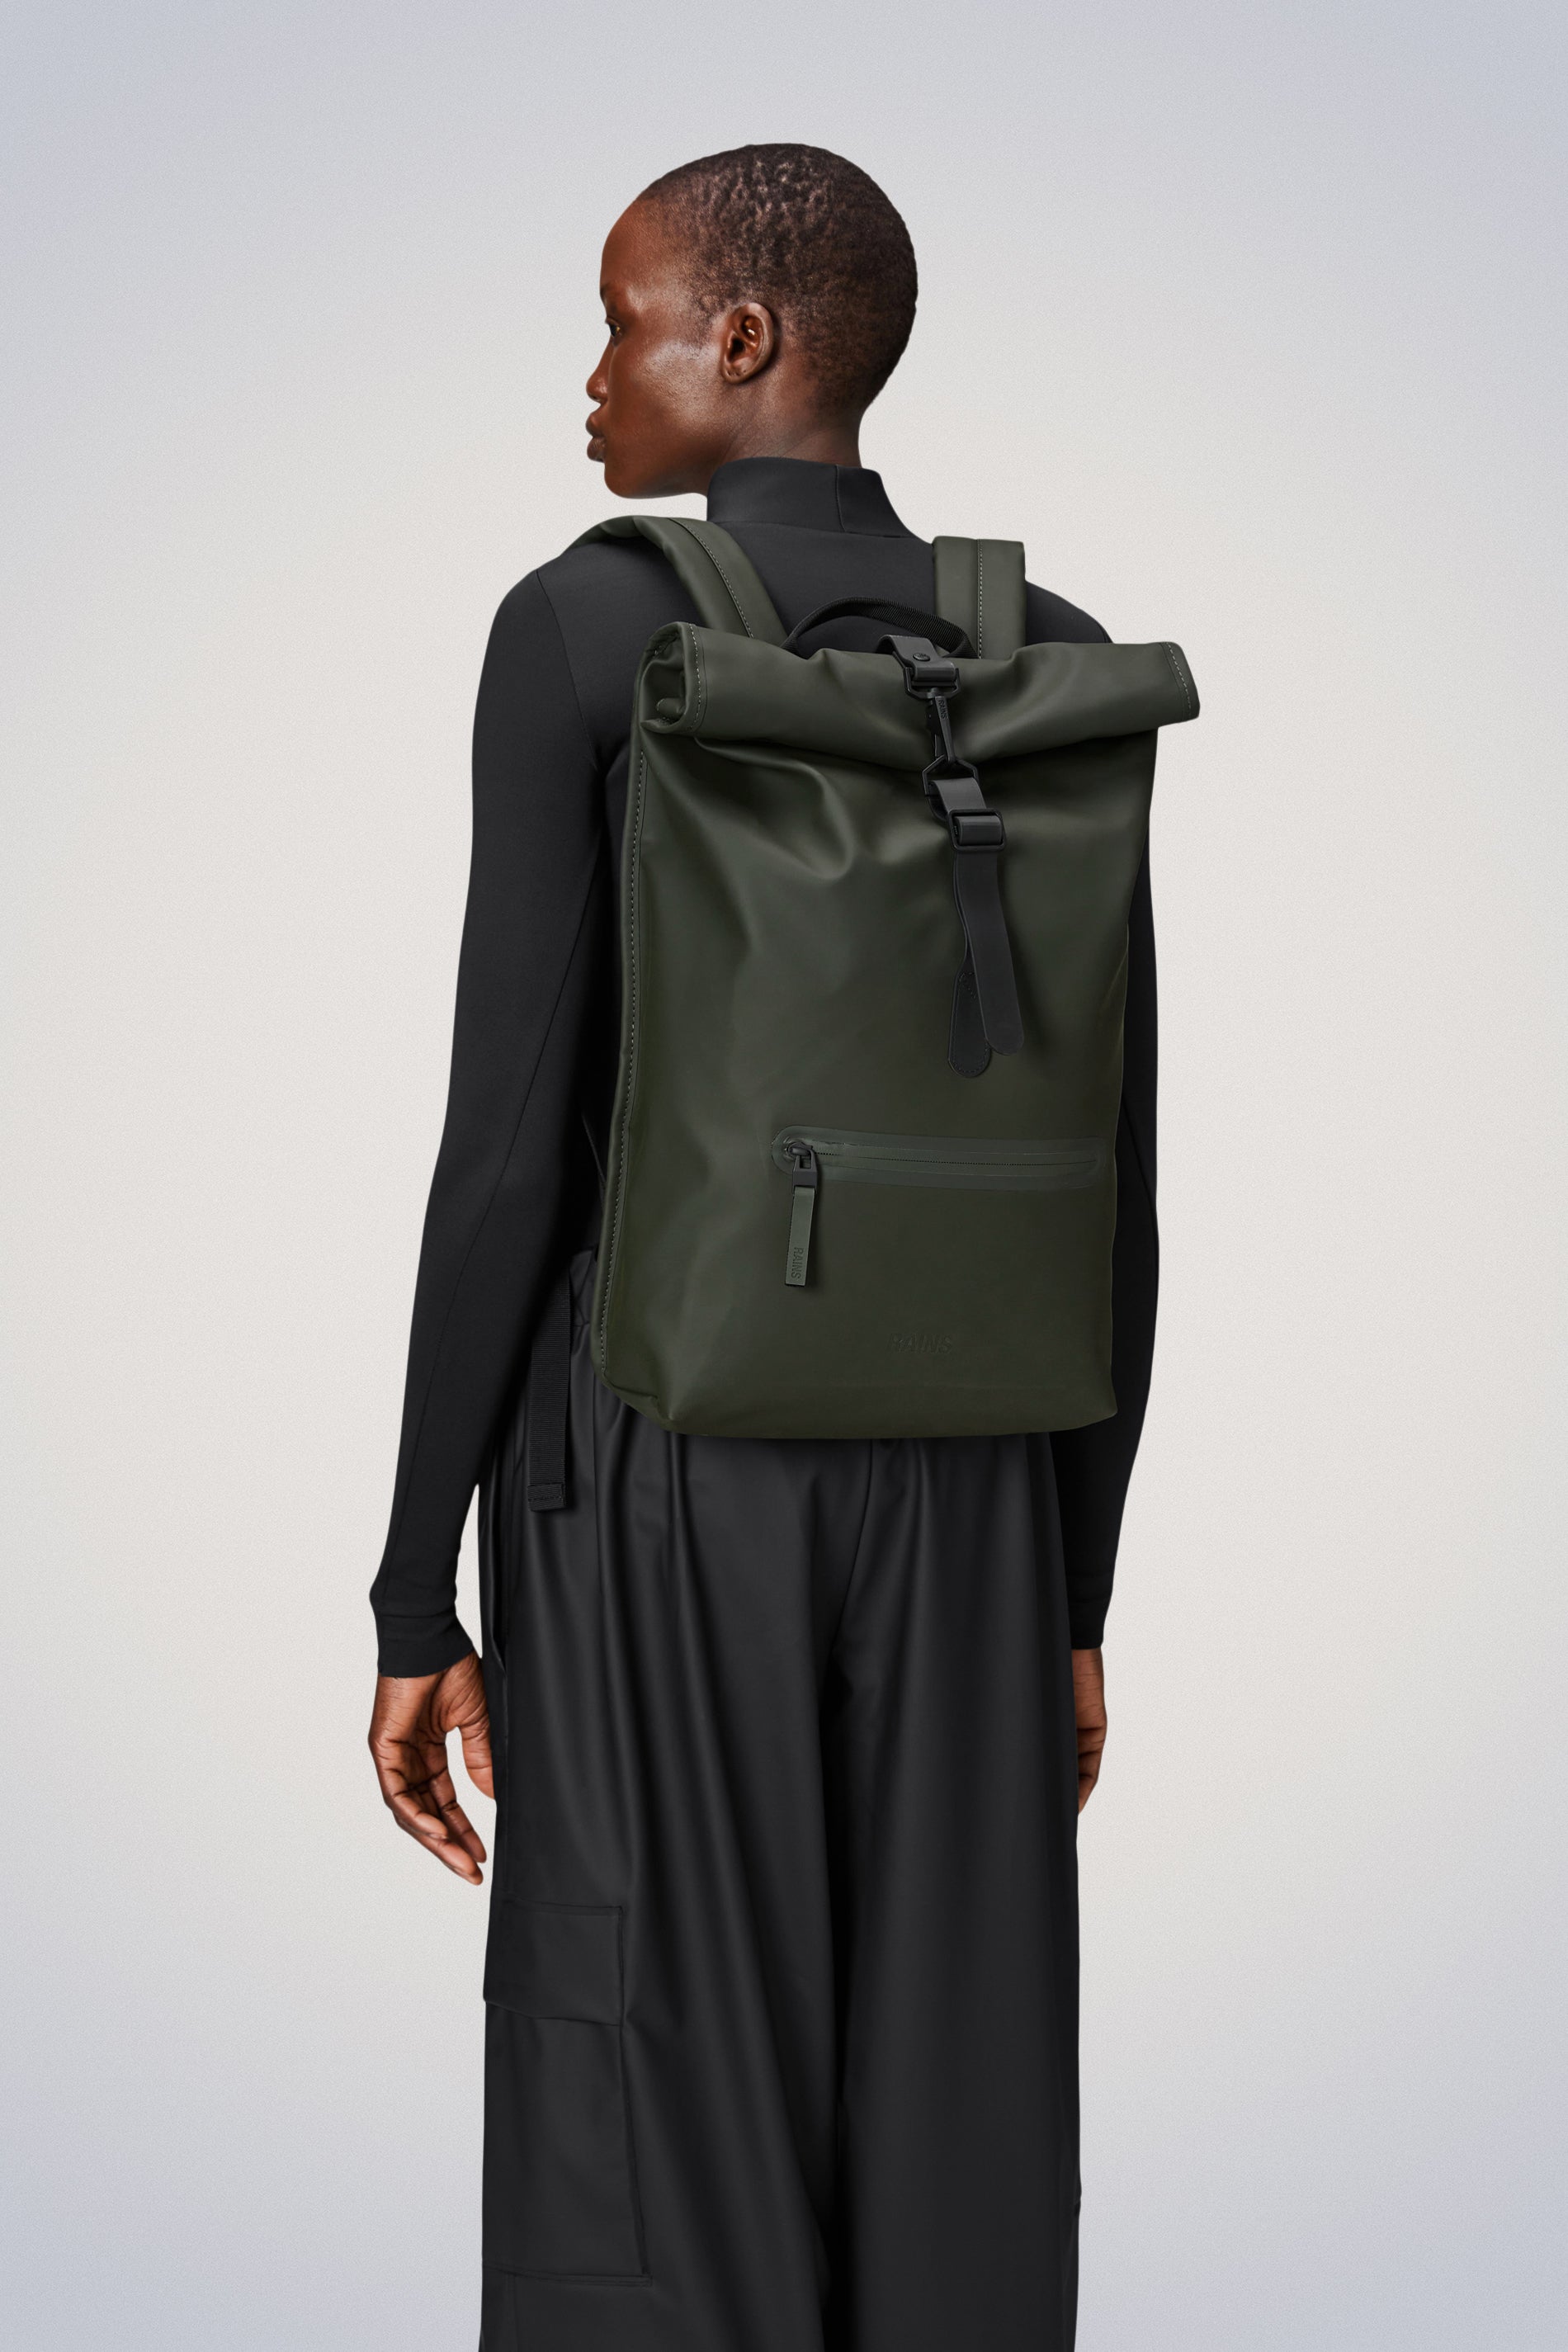 Waterproof Backpack | Buy Rain Resistant Rucksack & Daypack here